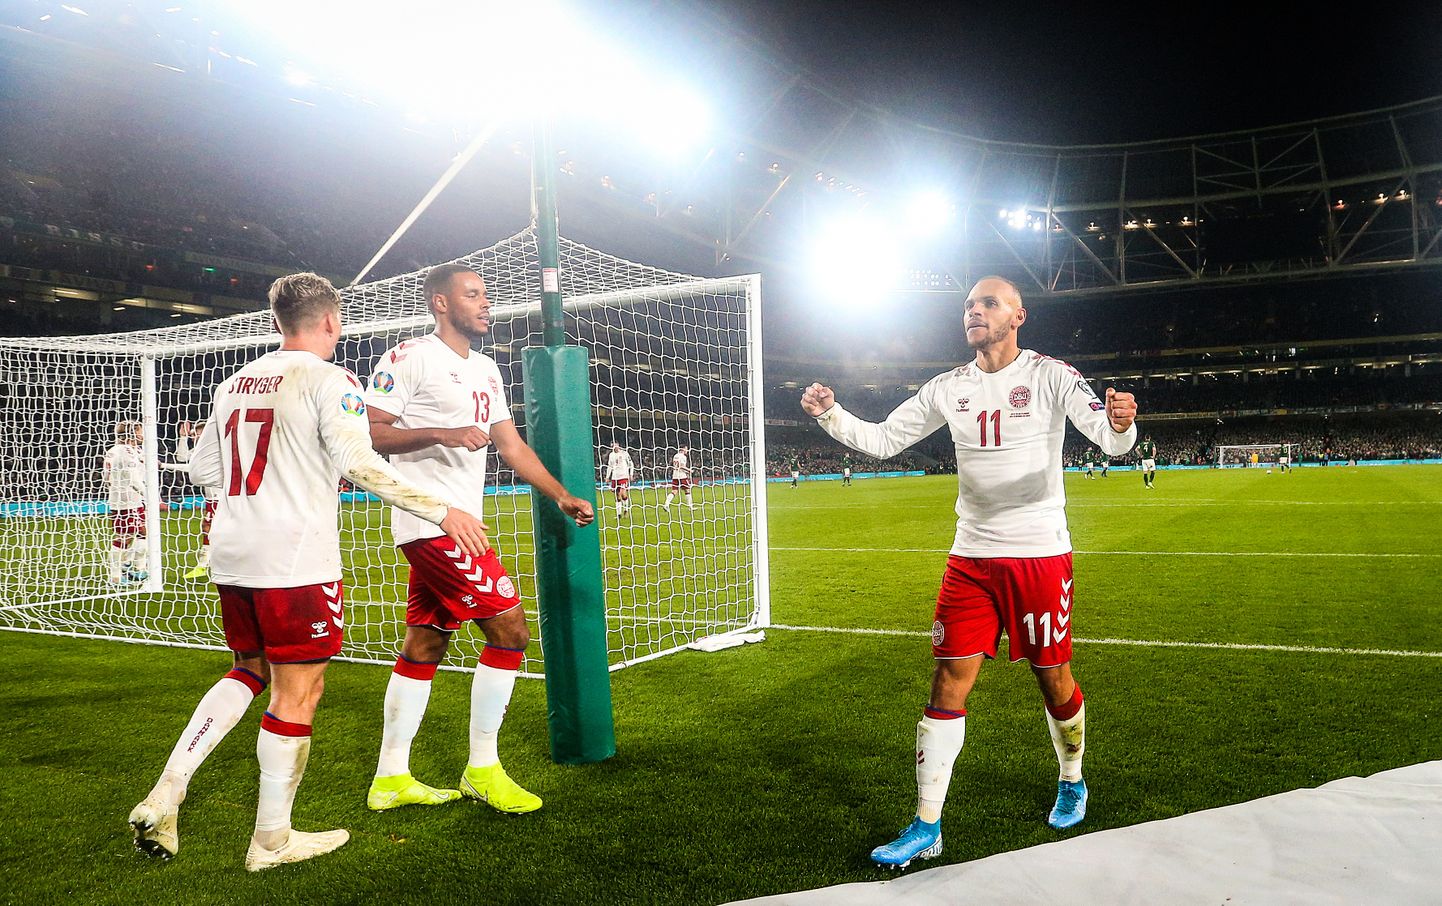 Taani jalgpallikoondis mängis võõrsil viiki Iirimaaga ja kindlustas koha 2020. aasta EM-finaalturniiril.